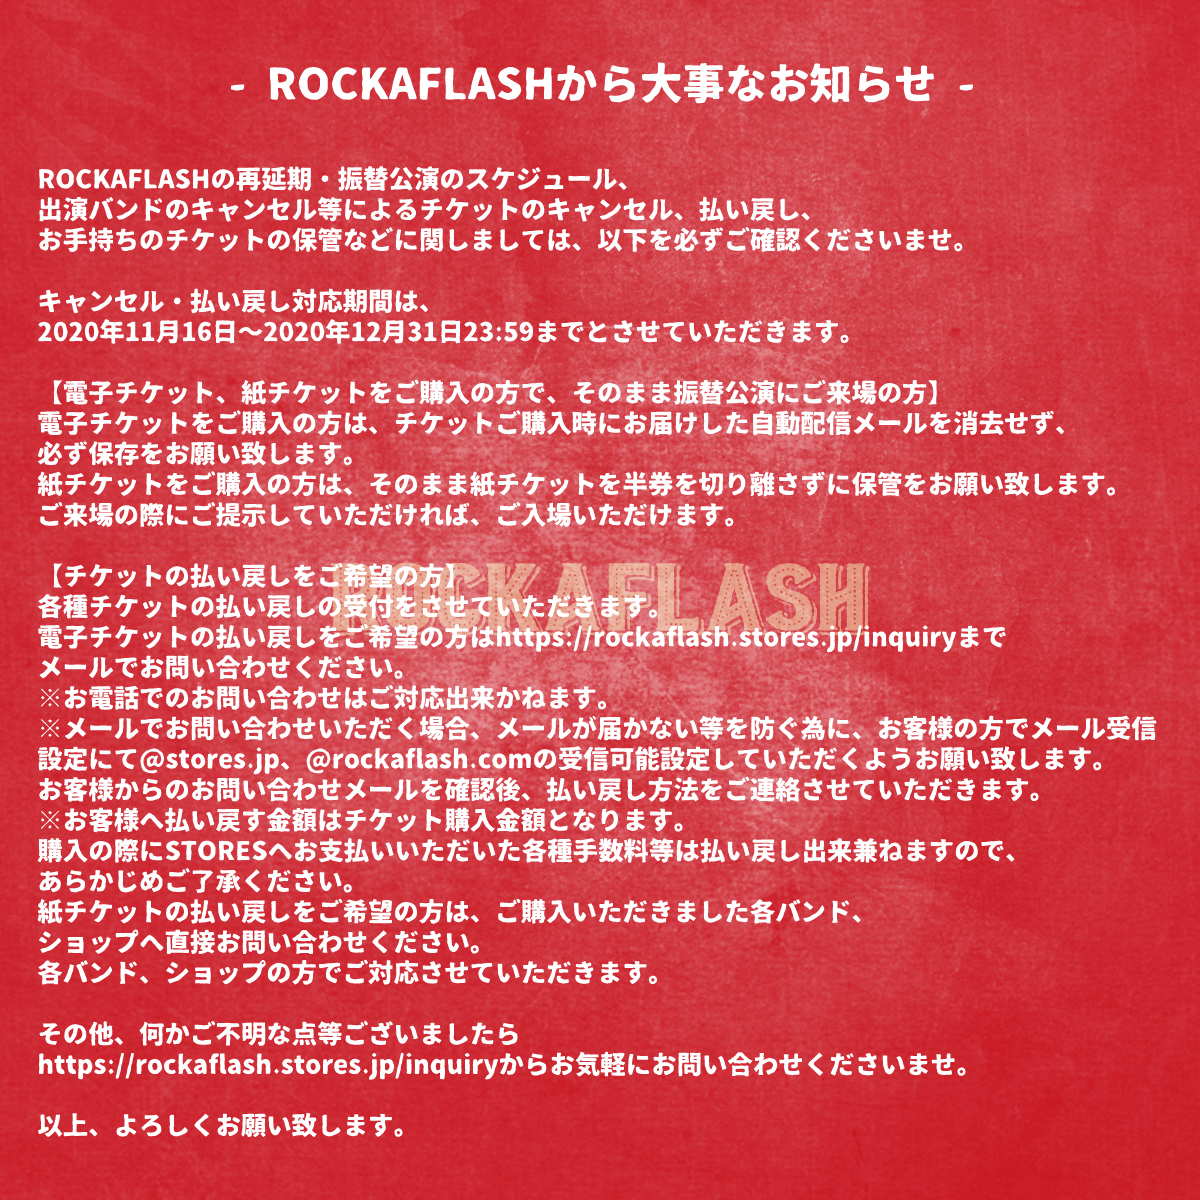 【中止】ROCKAFLASHの写真